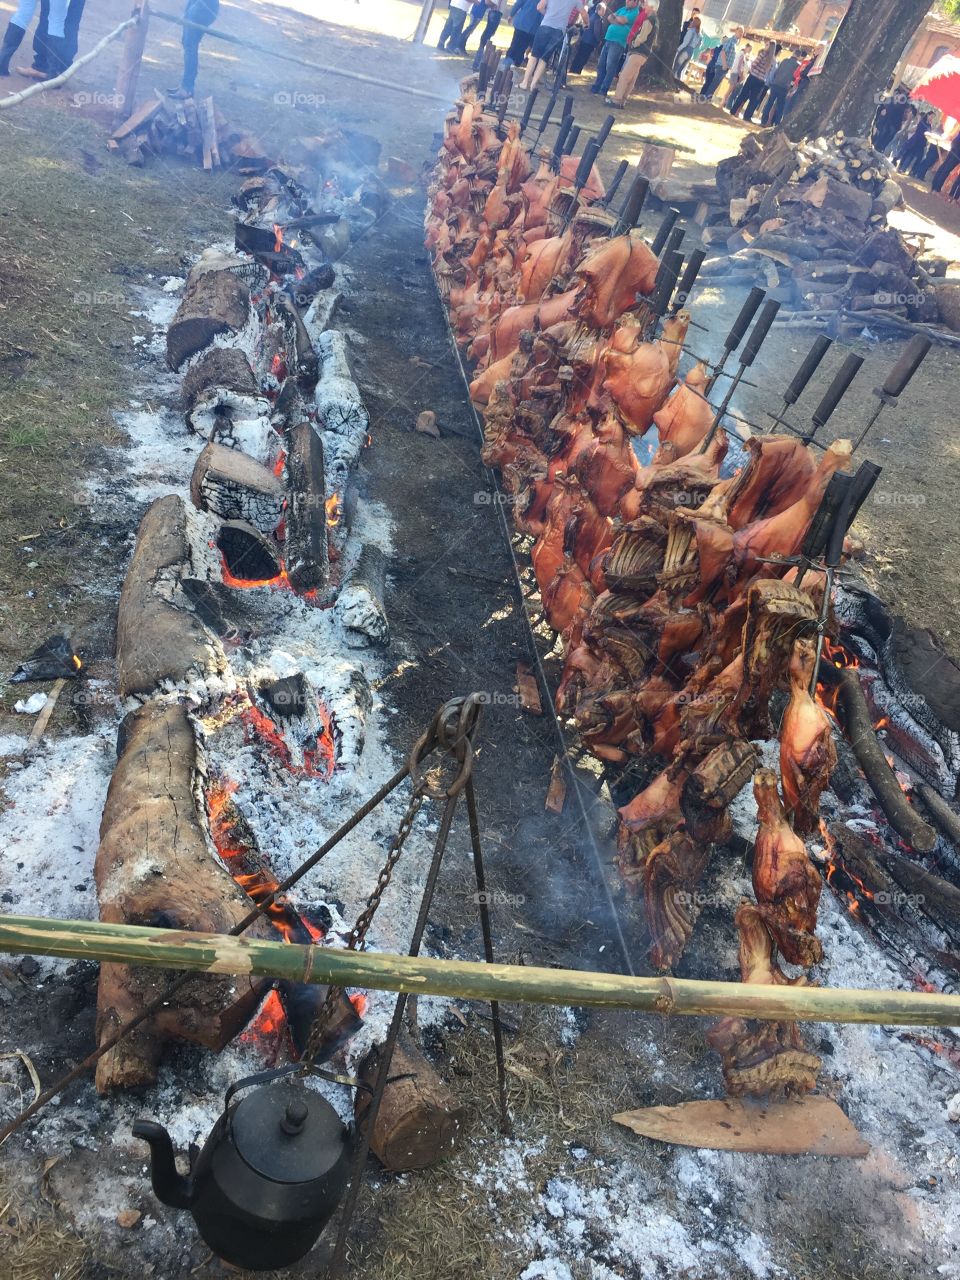 Leitoa no fogo de chão! Roast pork on the ground fire.